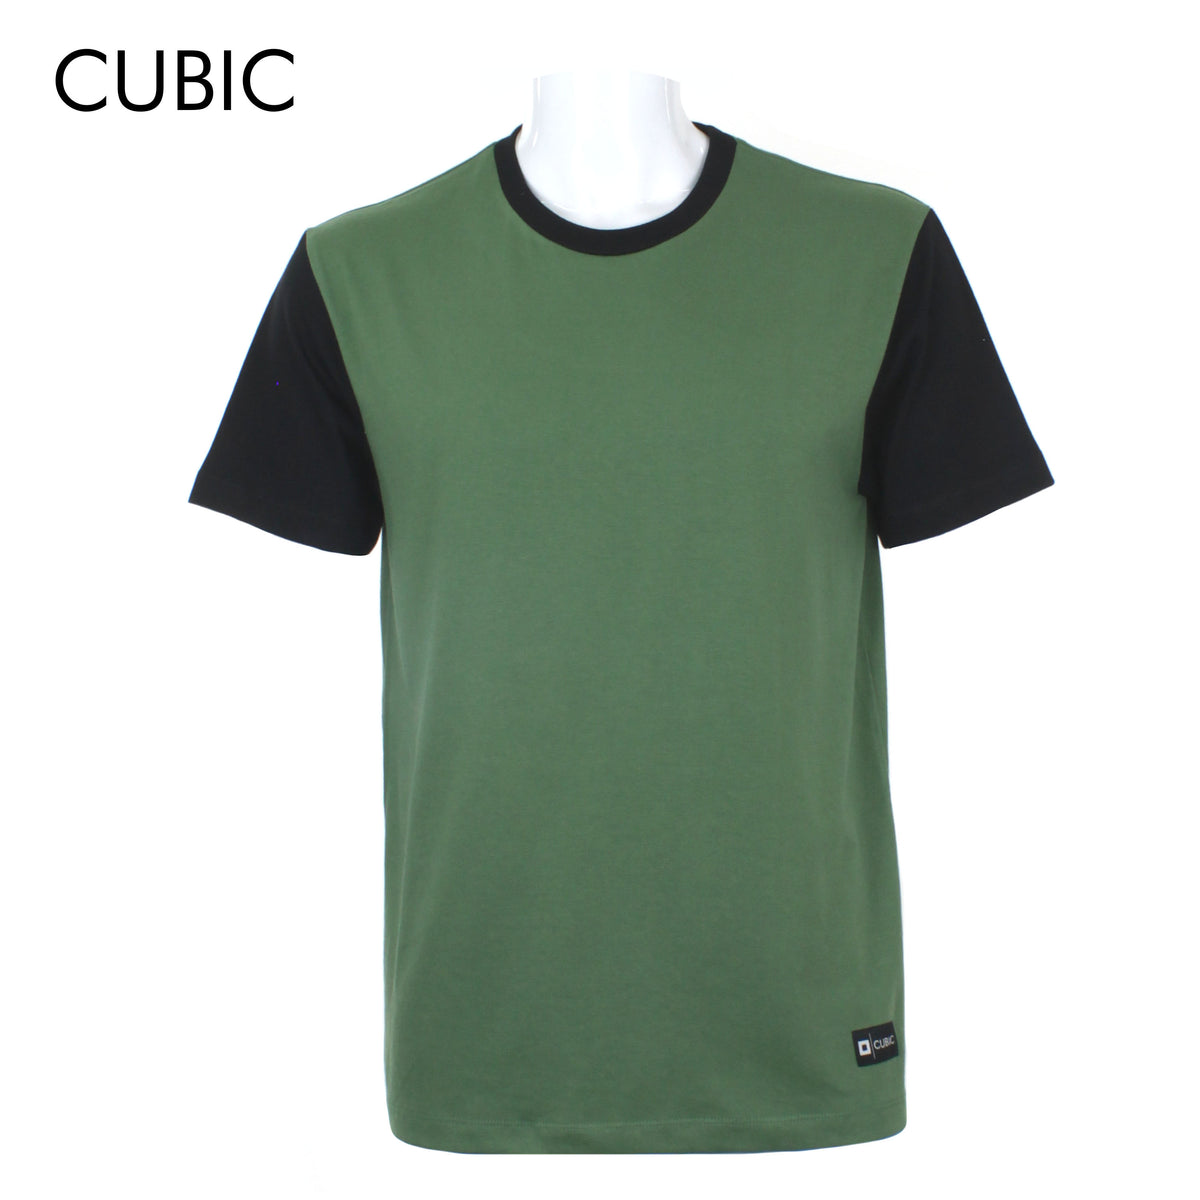 Cubic Men Round Neck Tees T-shirt Plain Shirt Top Top for Men - CMJ2243R